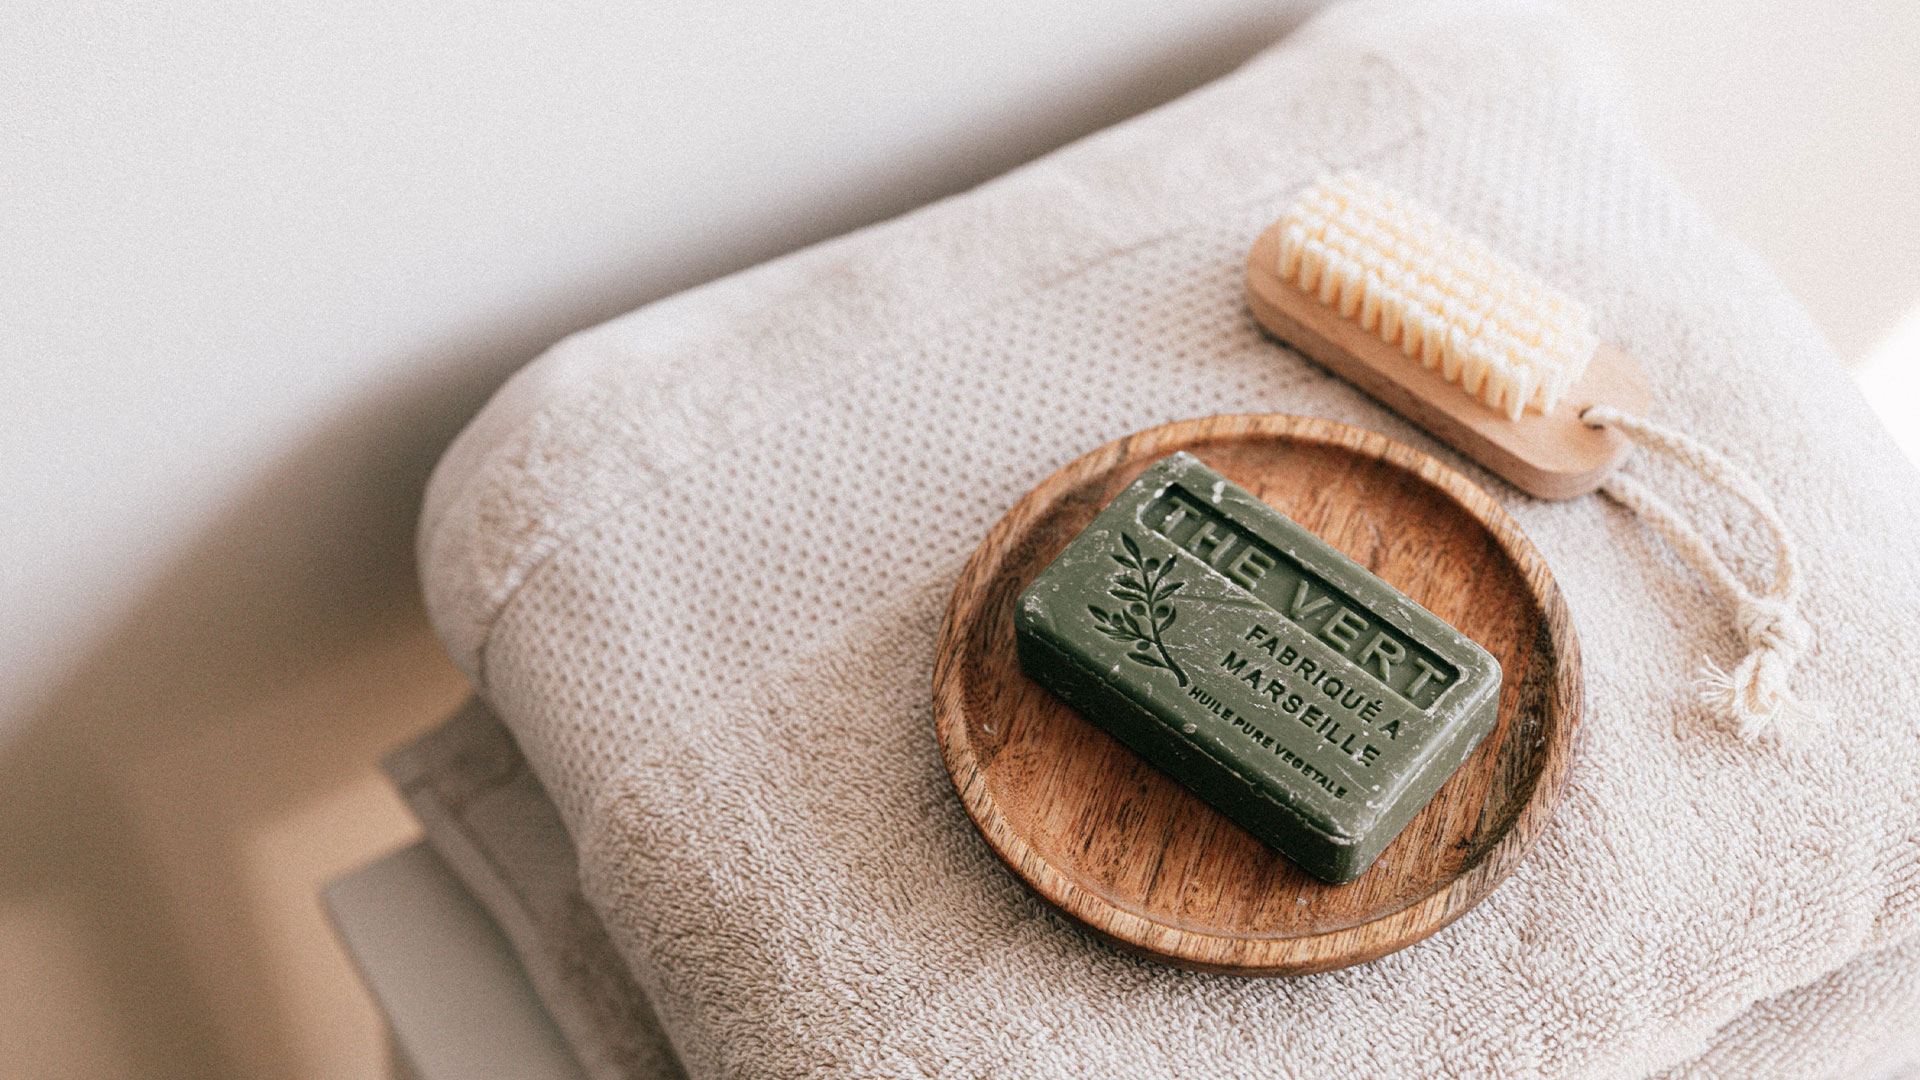 L'image représente un savon vert de Marseille dans un contenu en bois. Ce contenu en vois est sur des serviette de bain avec une brosse à sa droite. La photo est très épurée. 